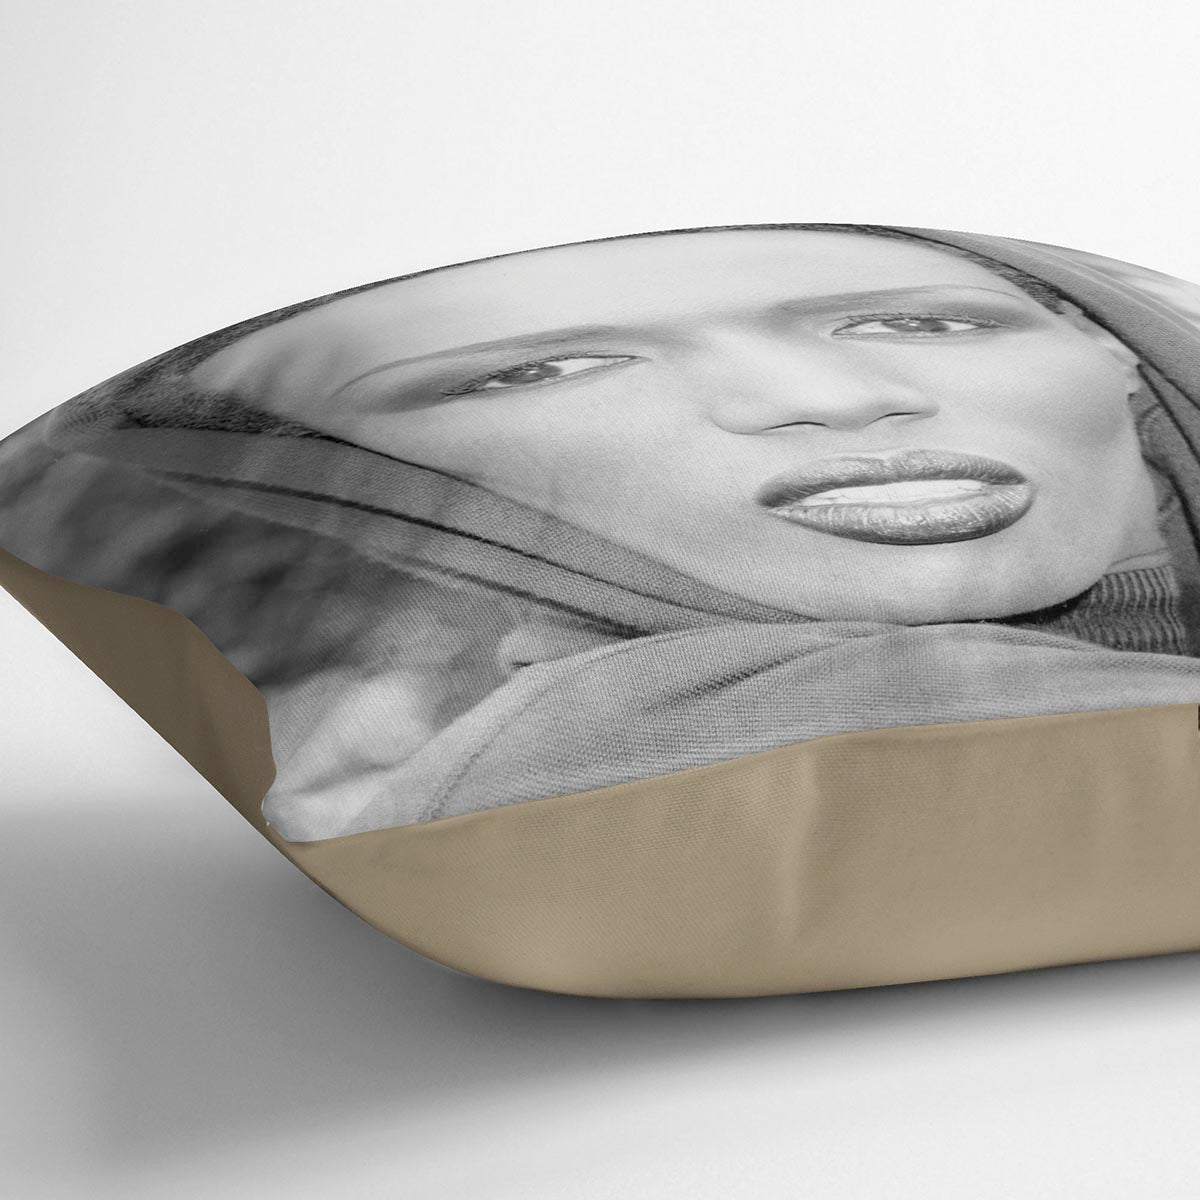 Grace Jones in style Cushion